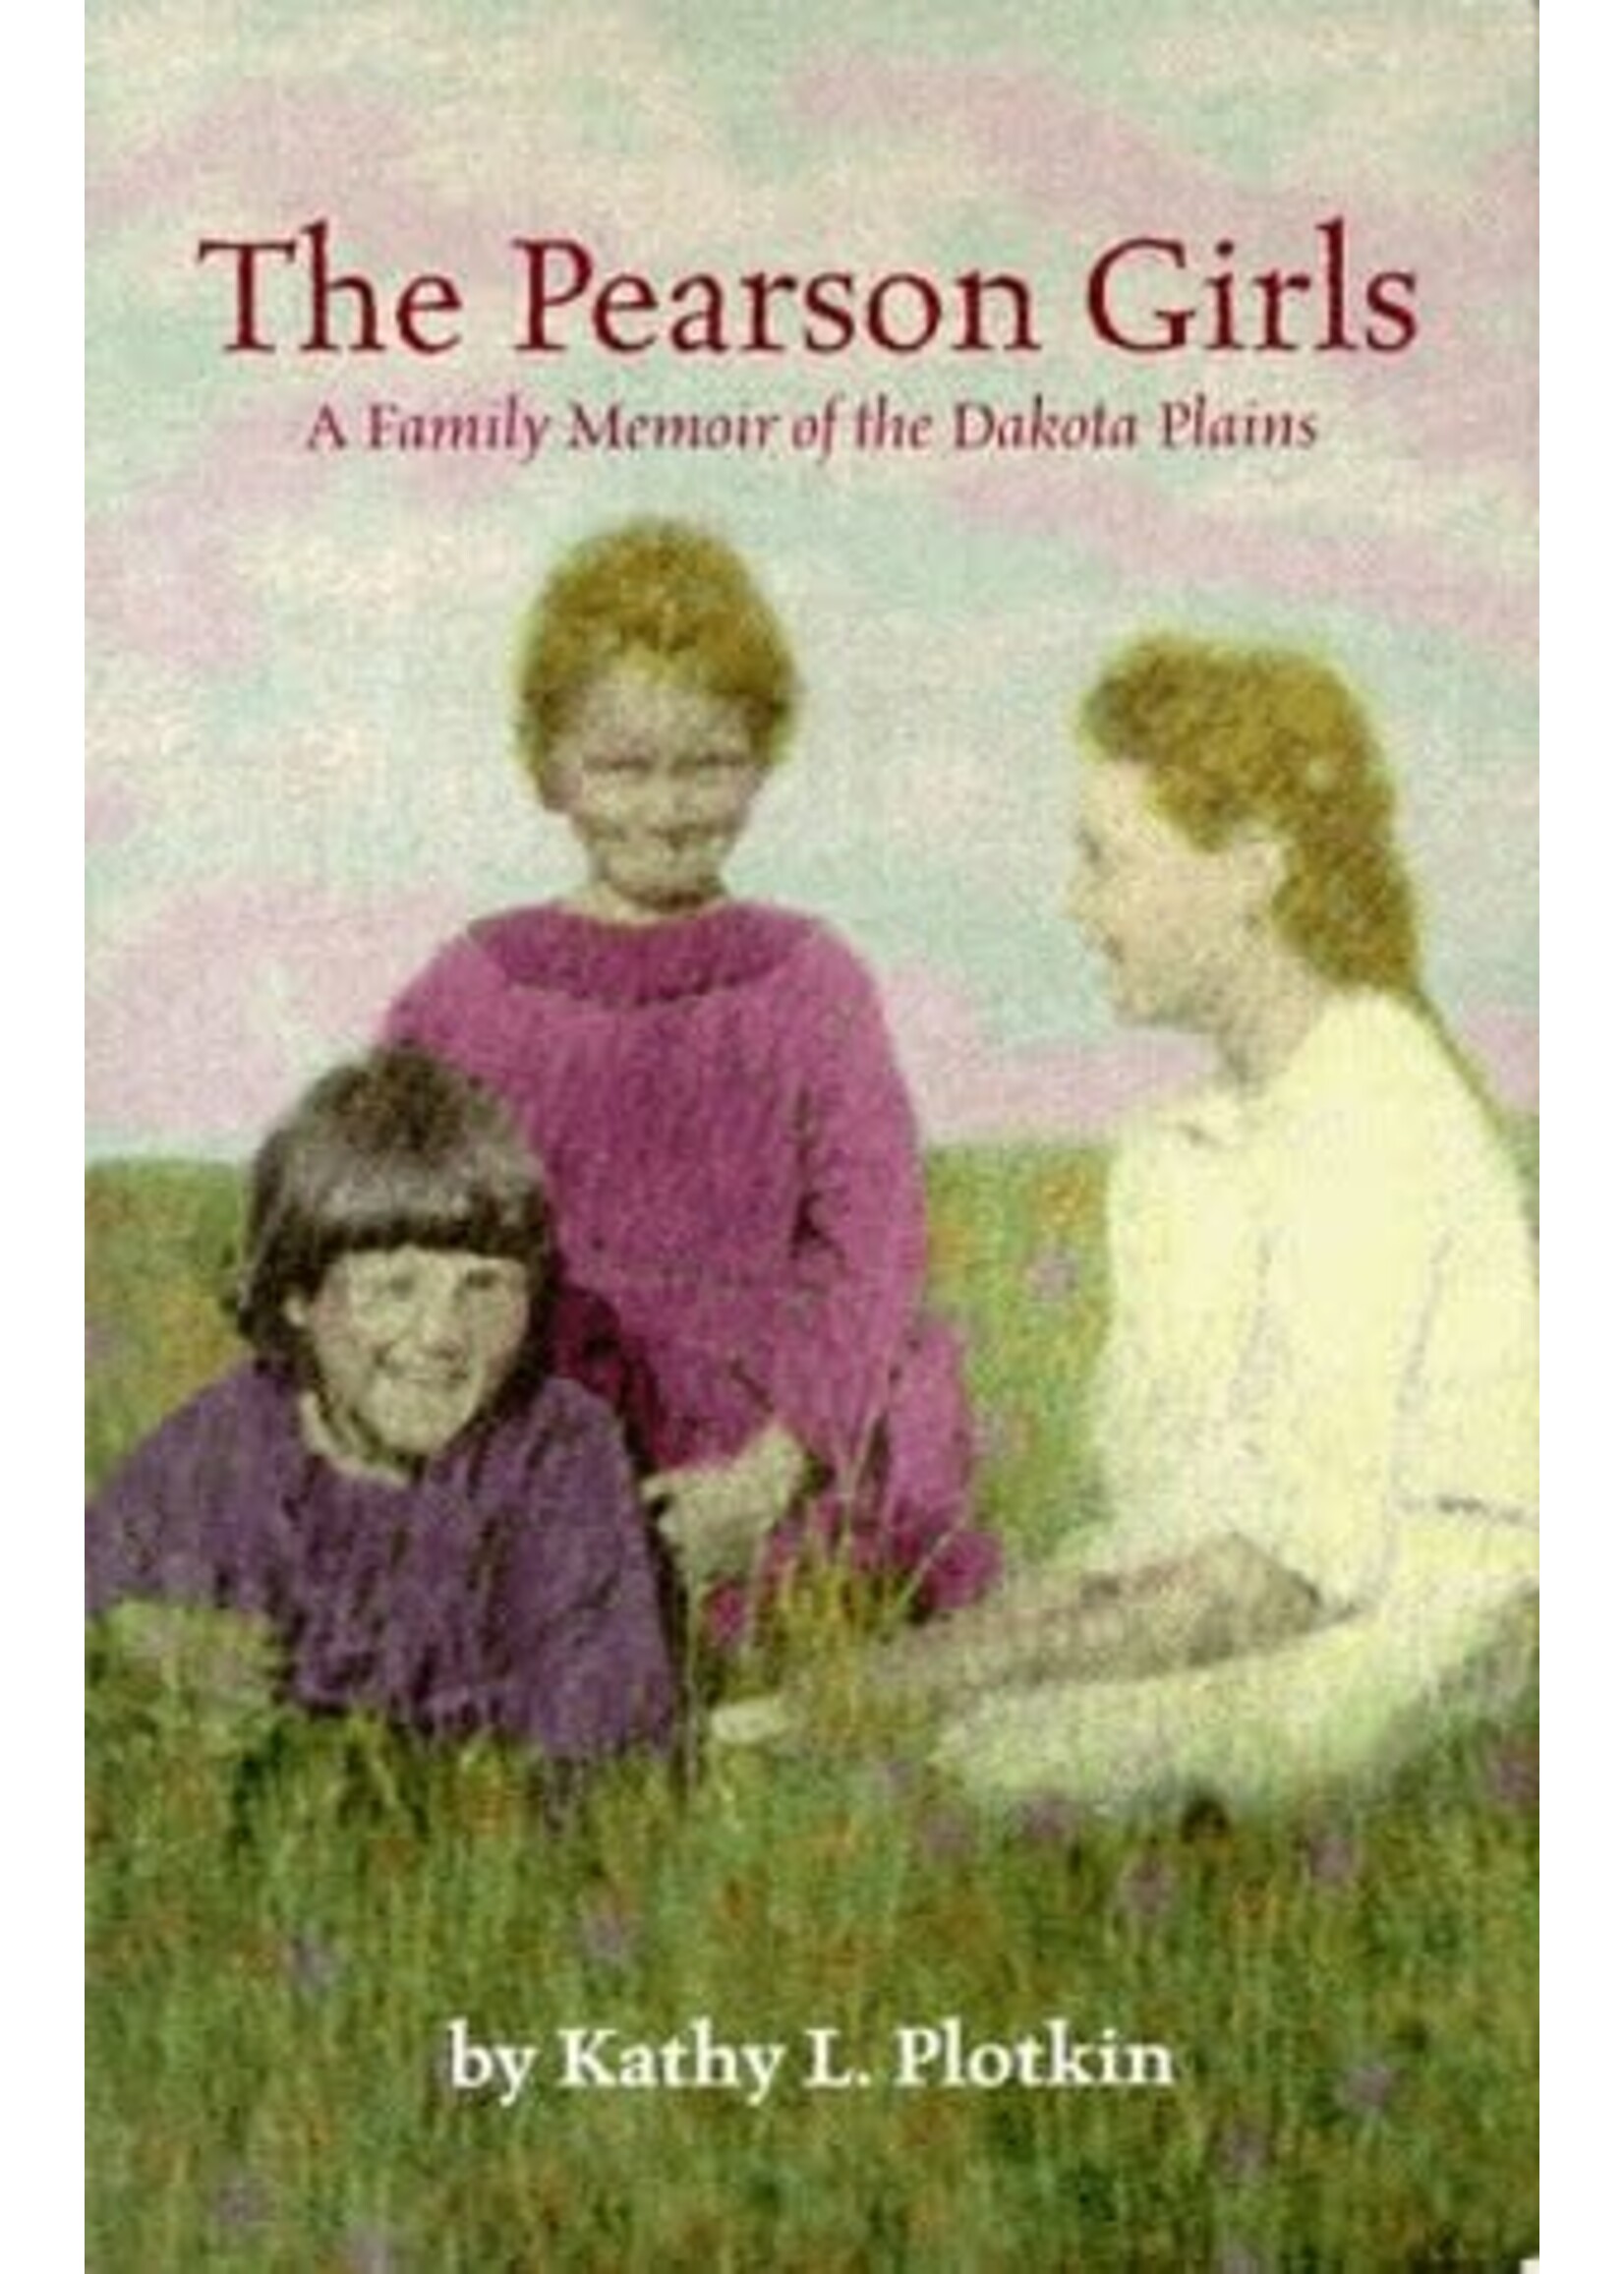 The Pearson Girls: A Family Memoir of the Dakota Plains